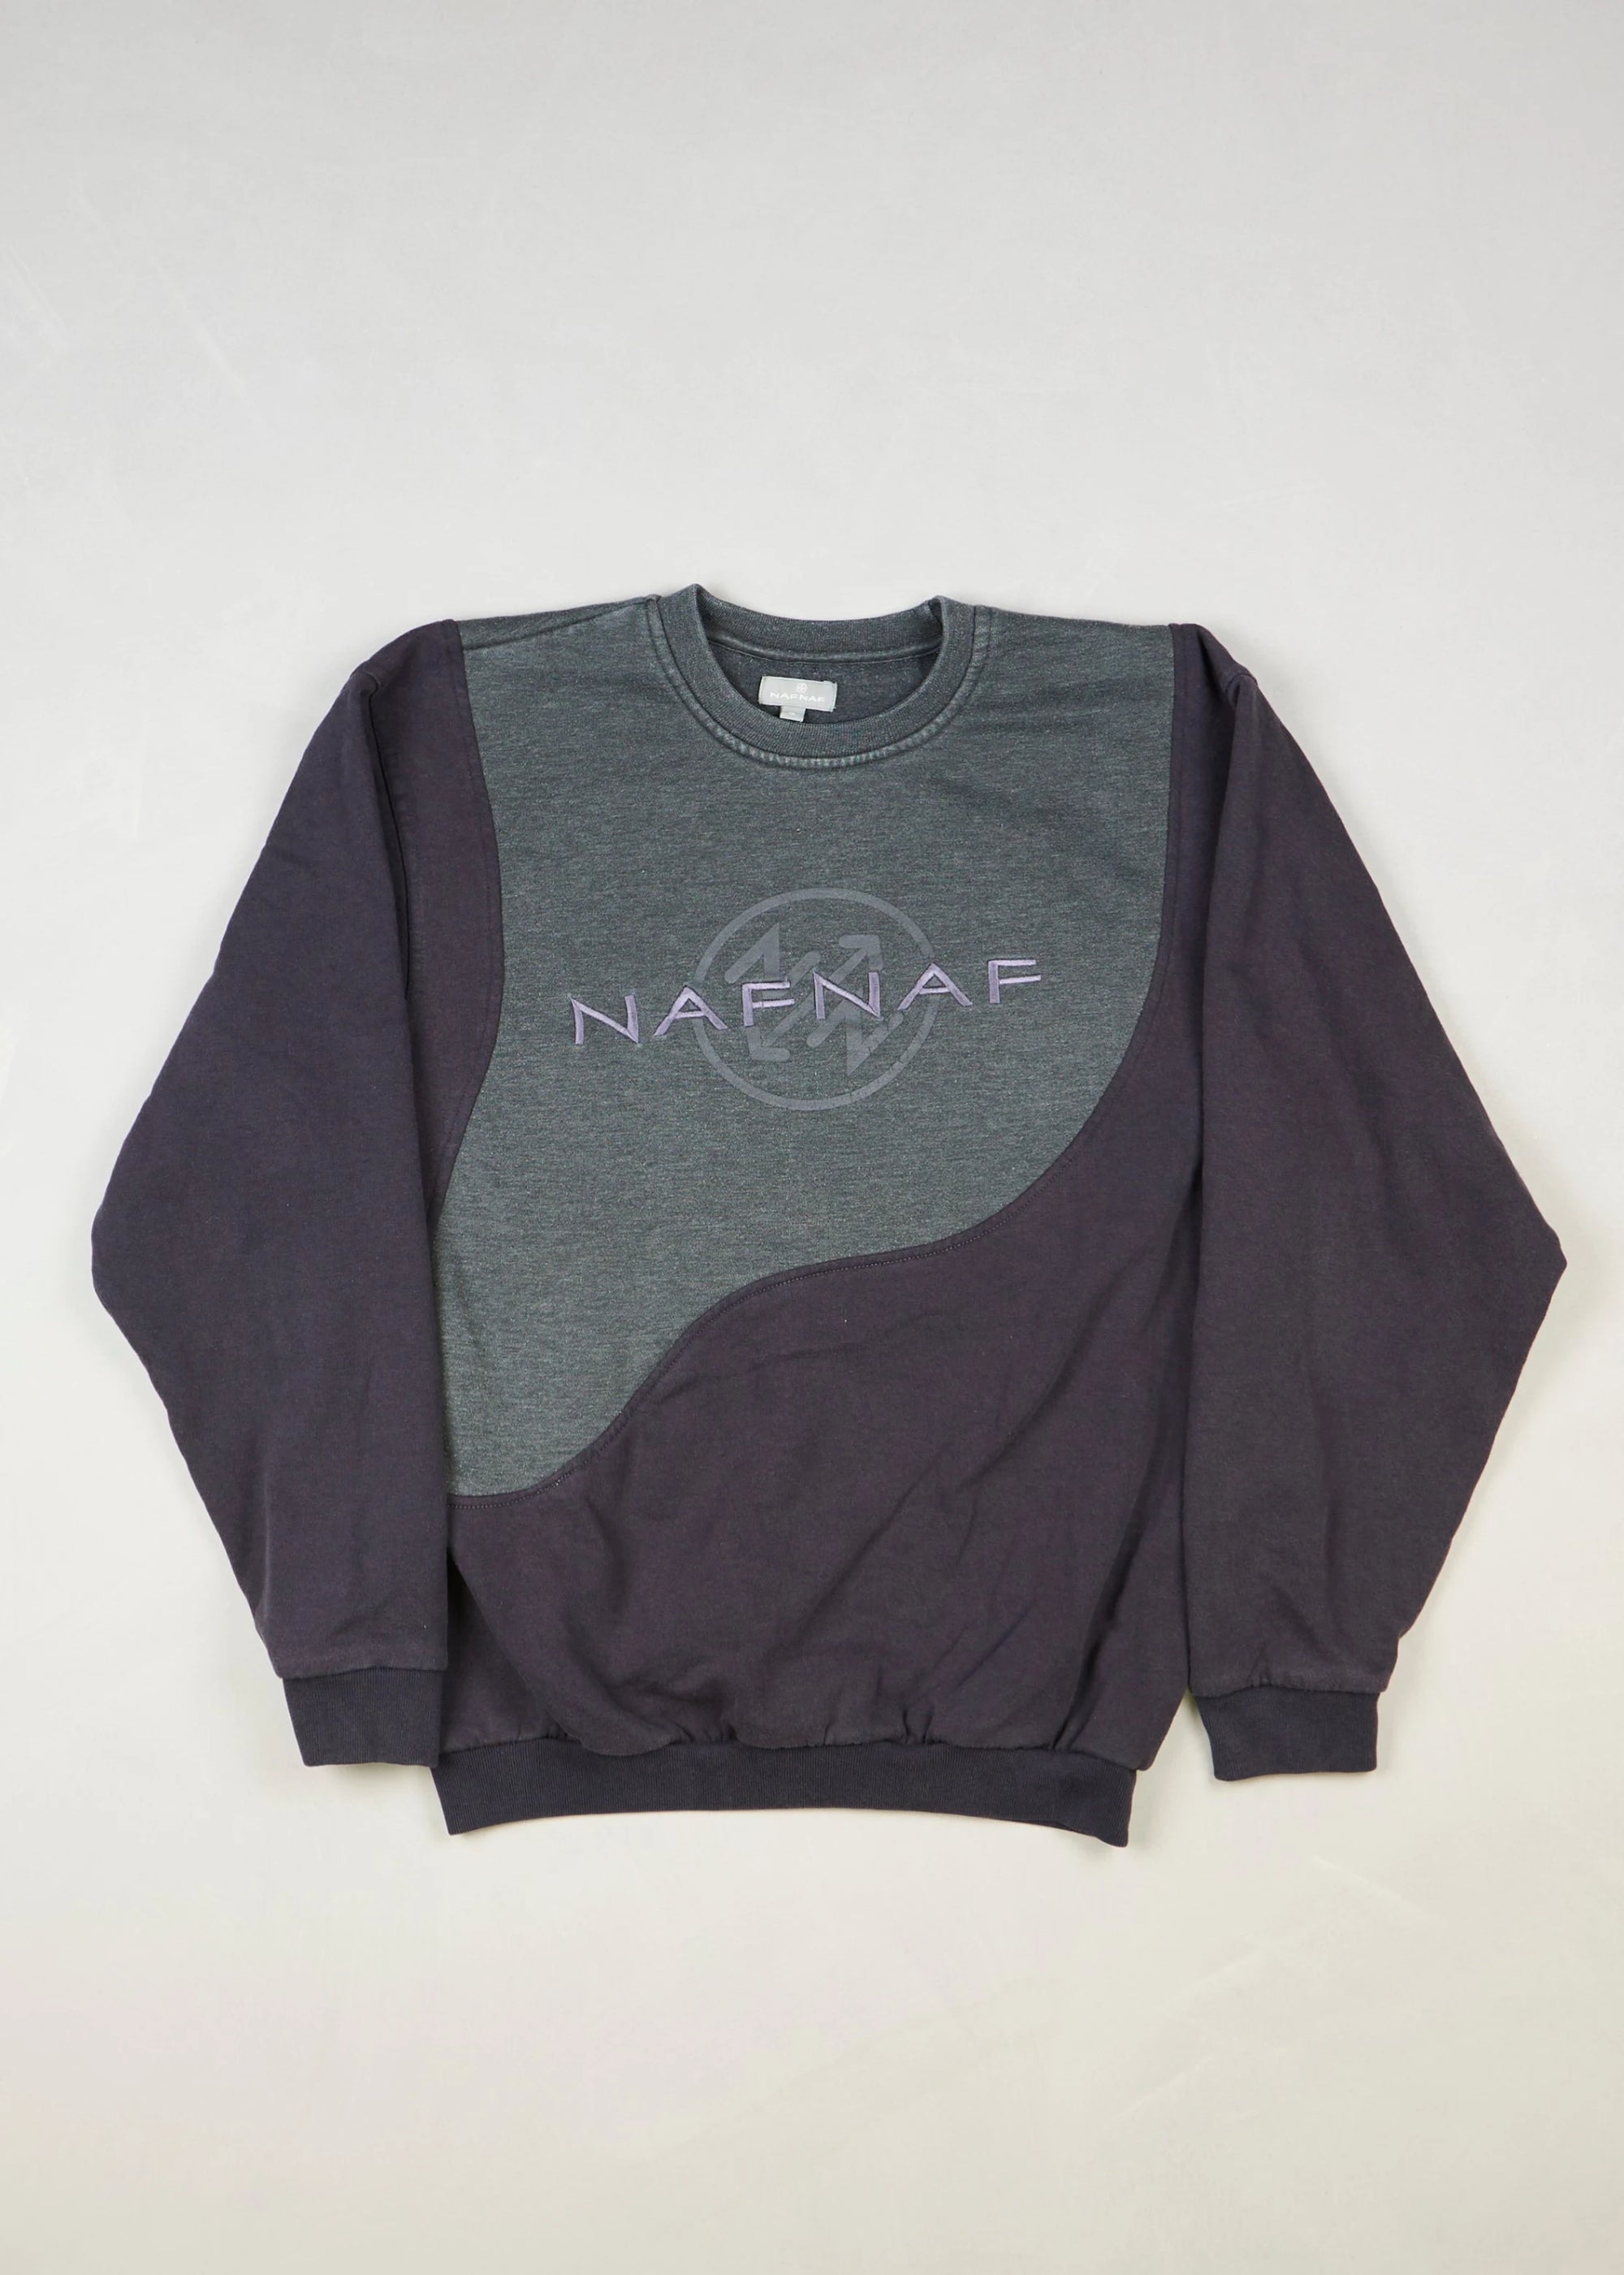 NAFNAF - Sweatshirt (M)